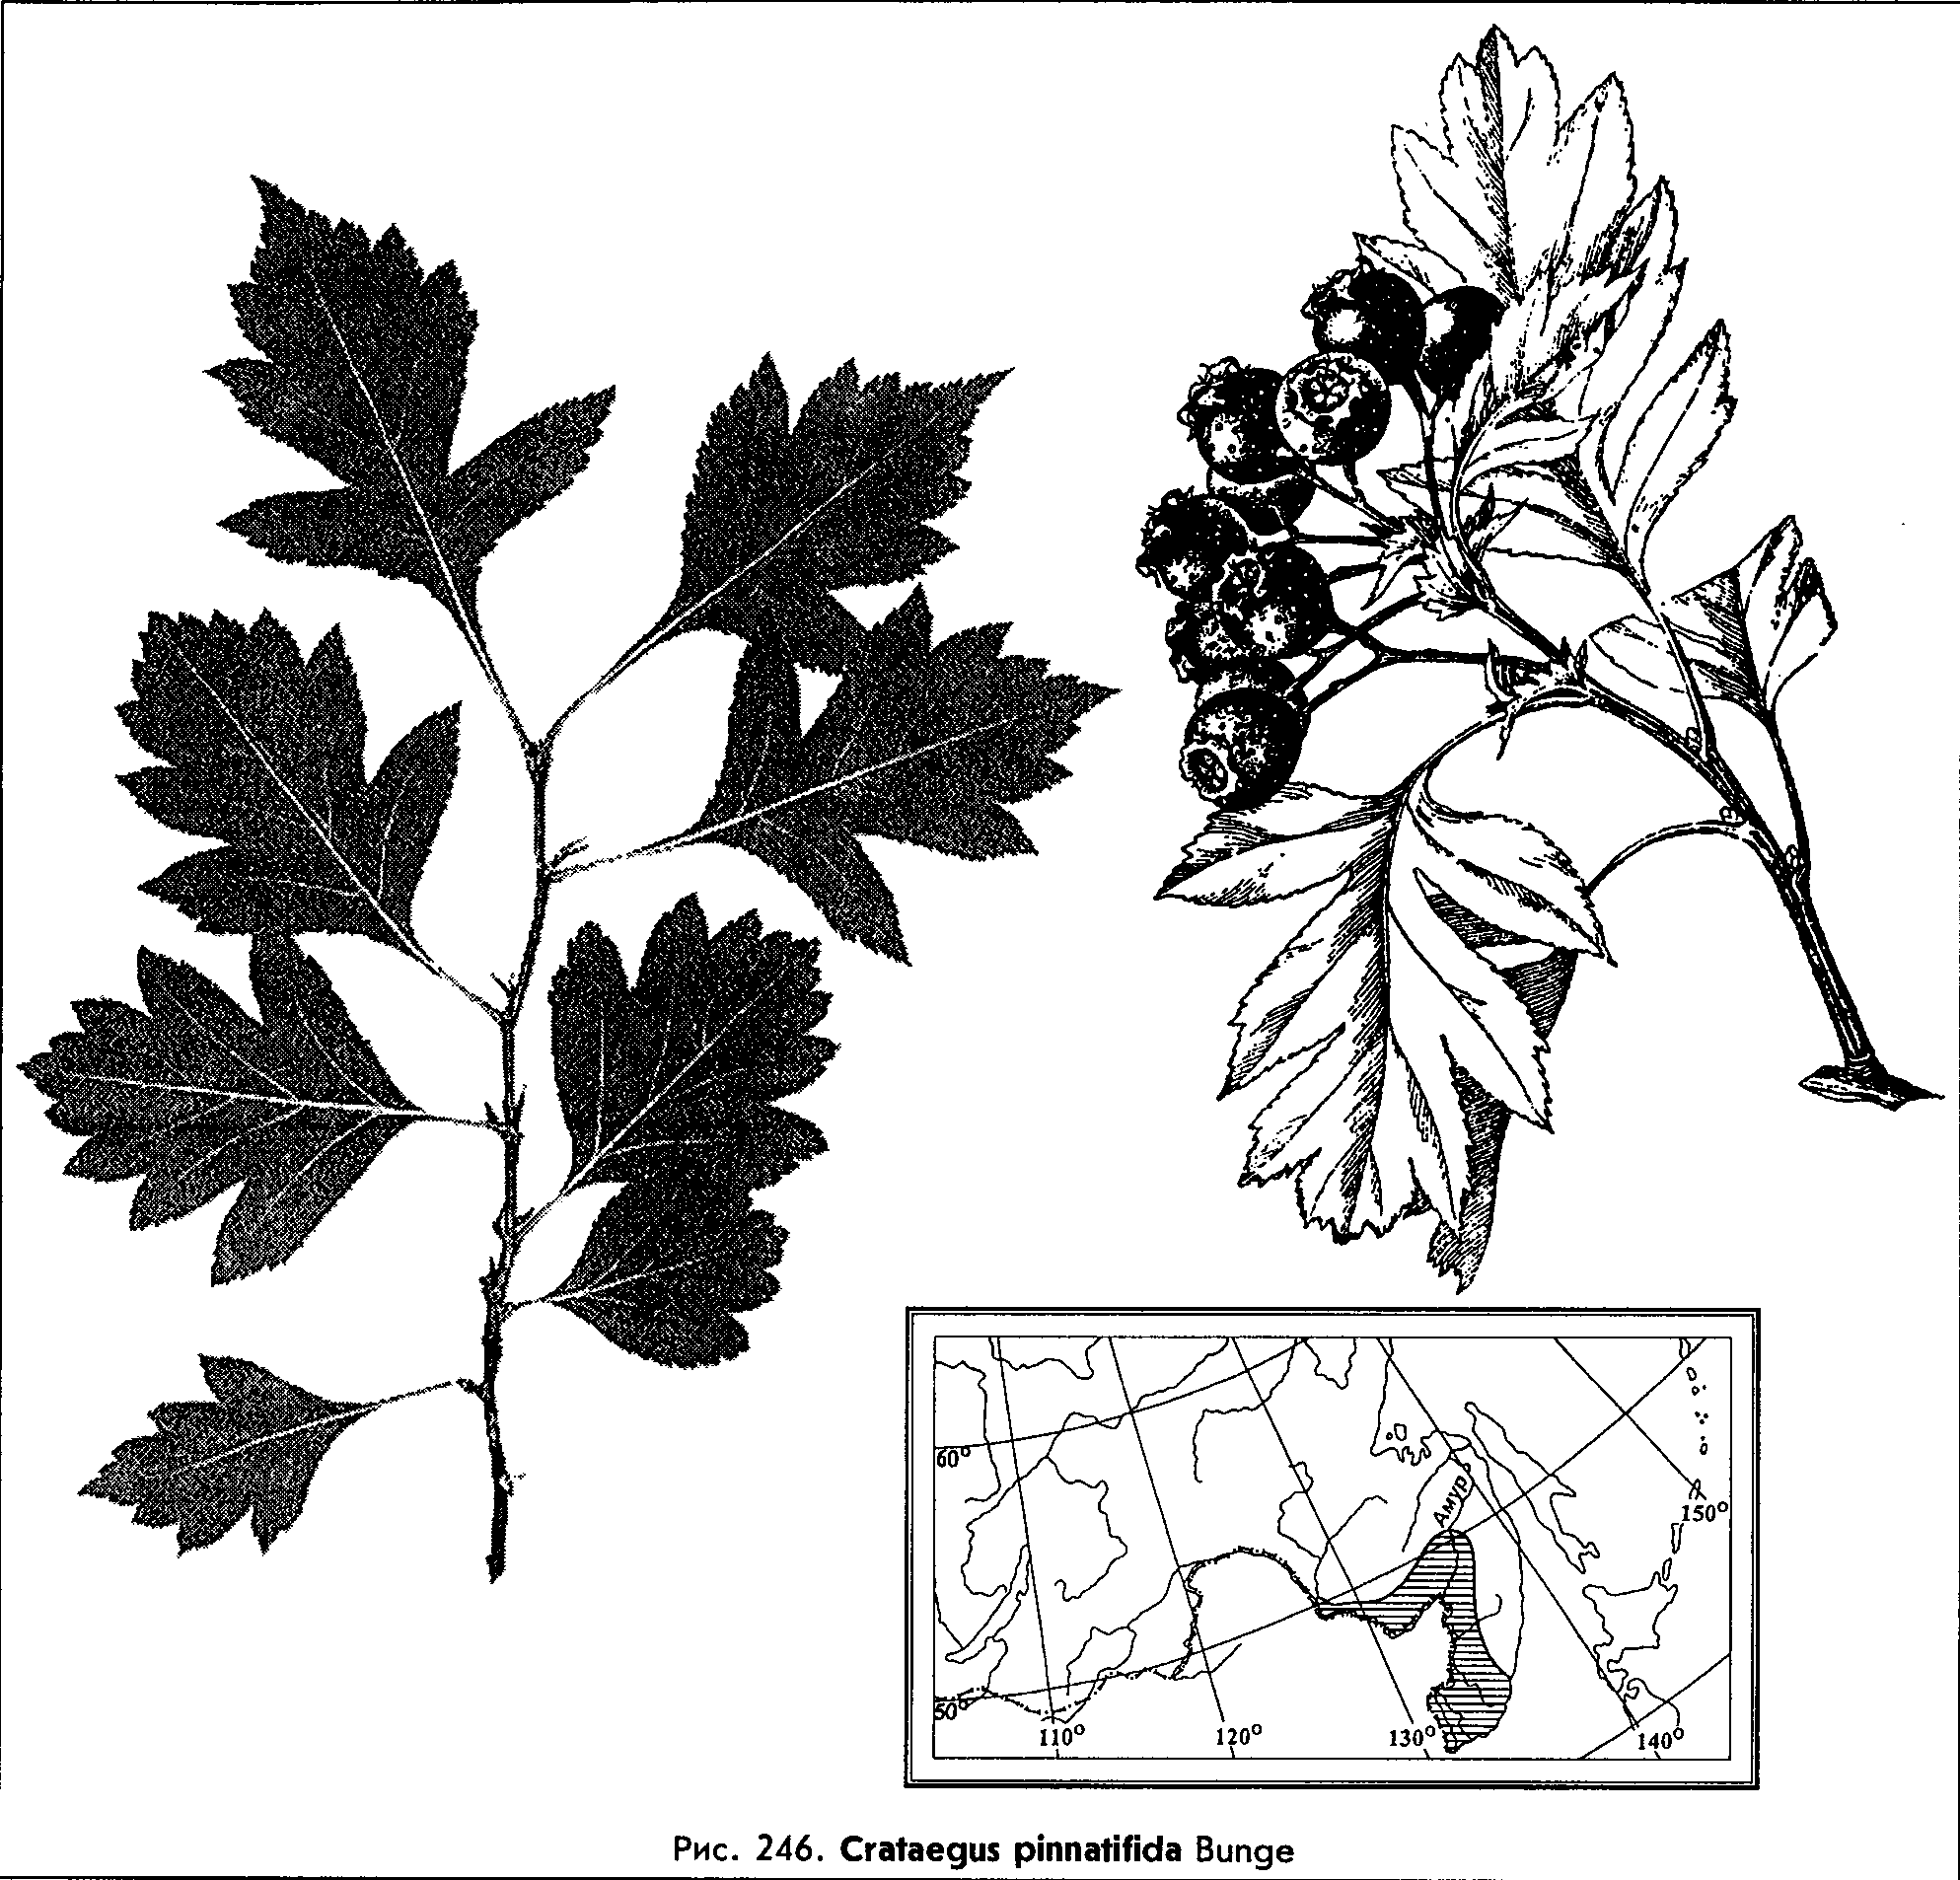 Crataegus pinnatifida Bunge — Боярышник перистонадрезанный (Ш) Cratae13